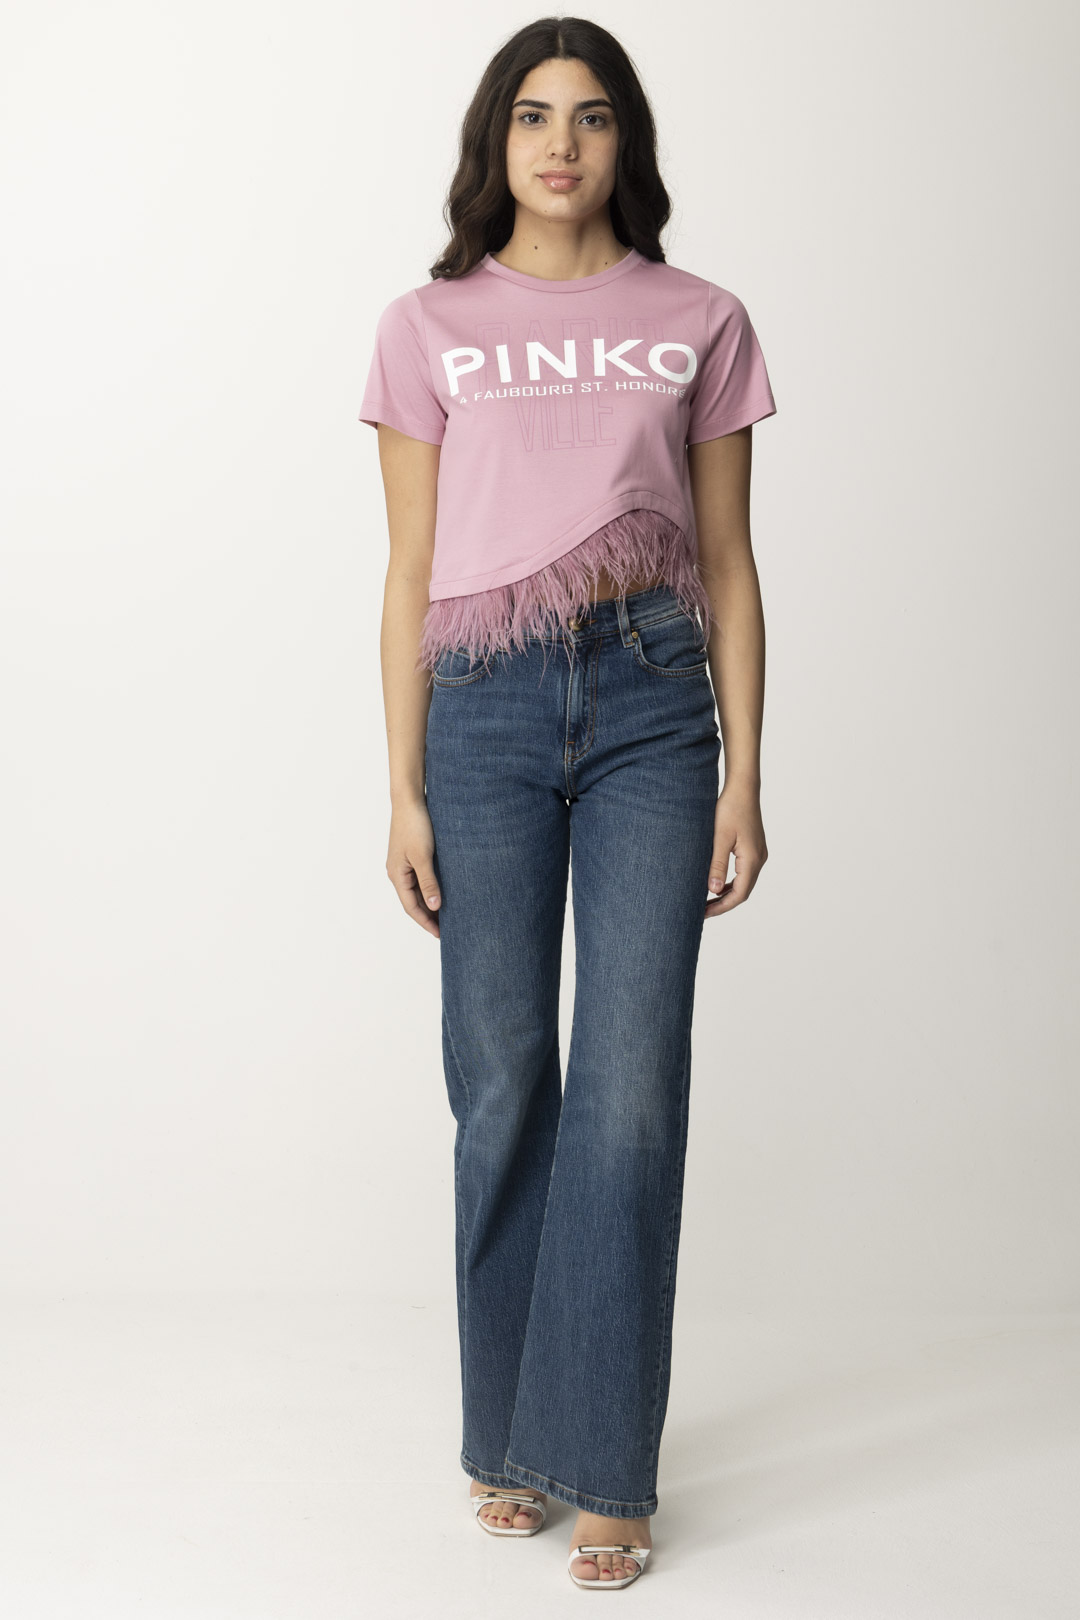 Anteprima: Pinko T-shirt con logo e piumette FUMO ORCHIDEA